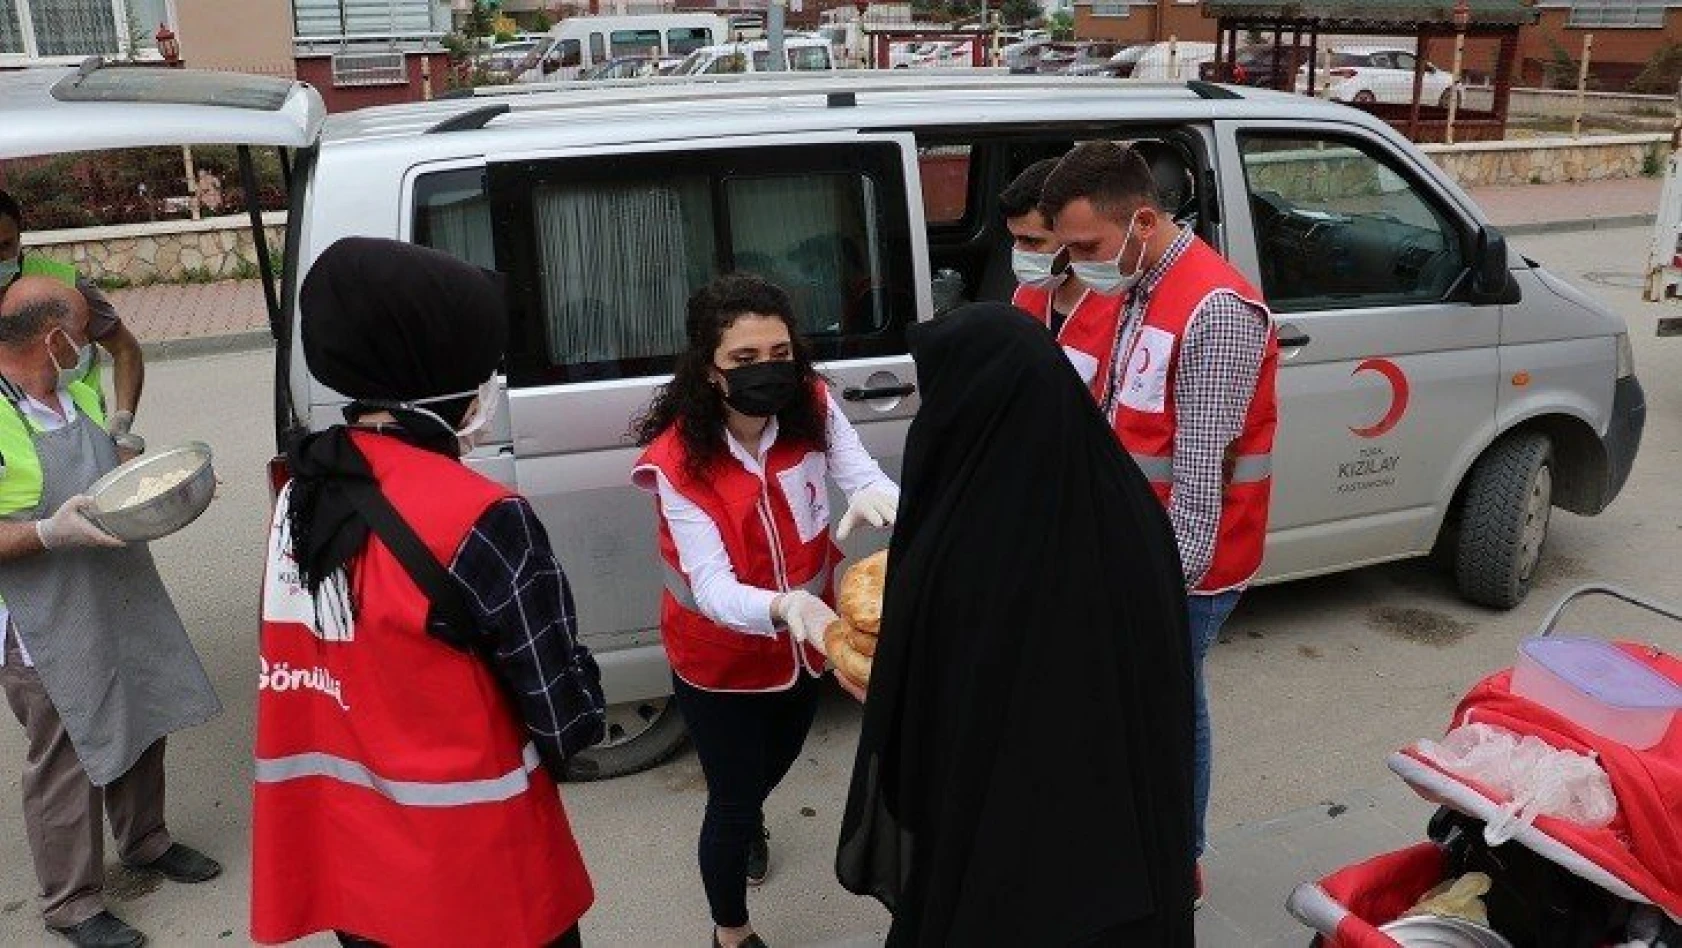 Kastamonu'da Kızılay ramazanda 14 bin kişiye yardım ulaştıracak